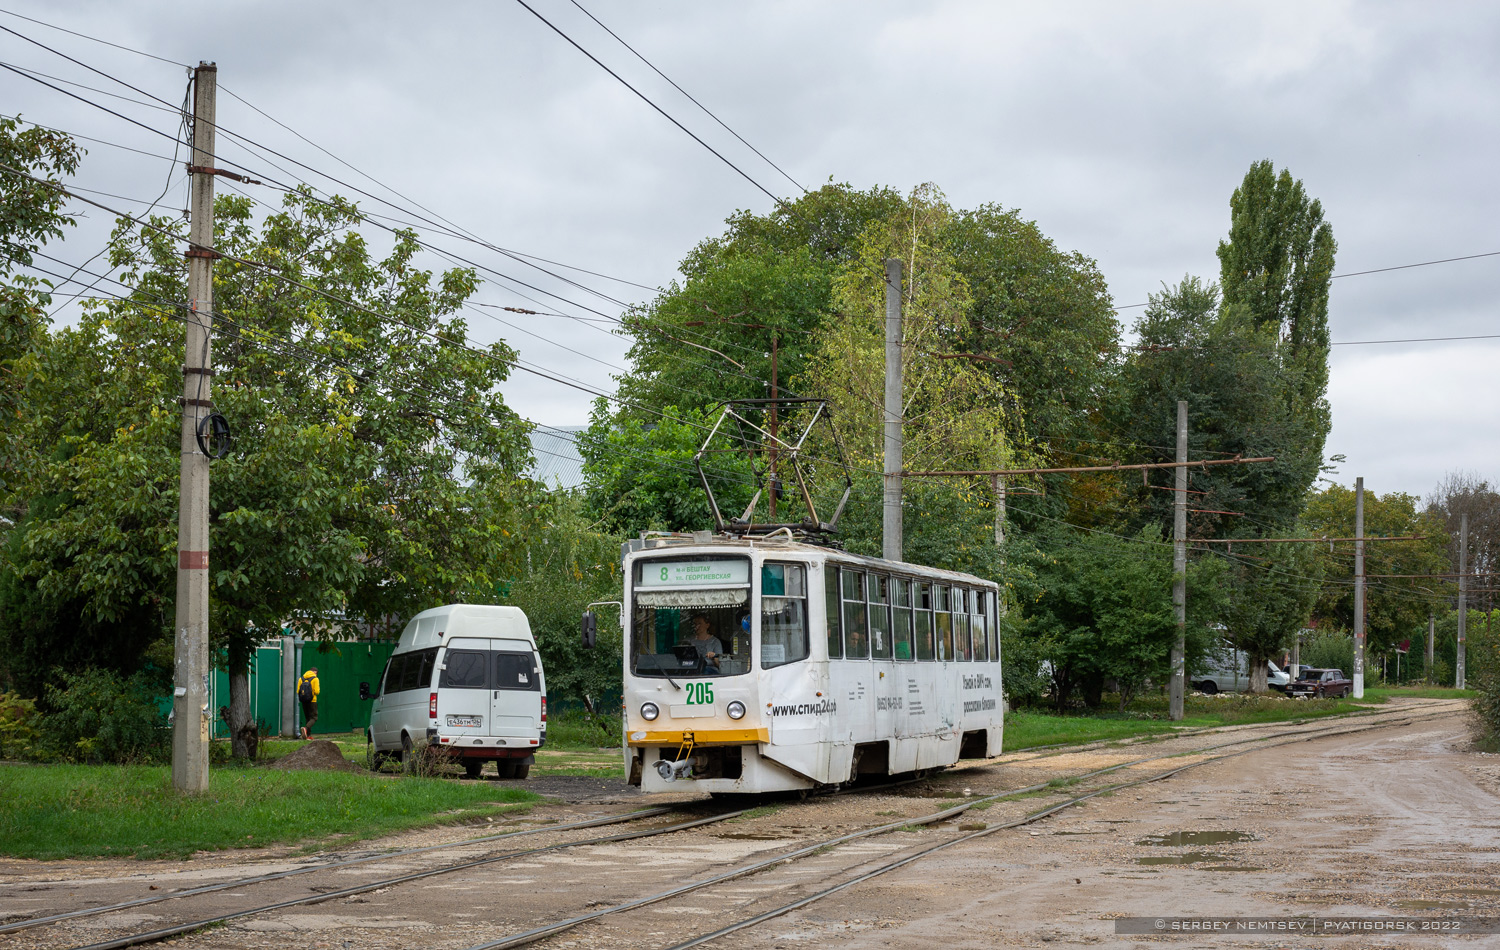 Pyatigorsk, 71-615 nr. 205